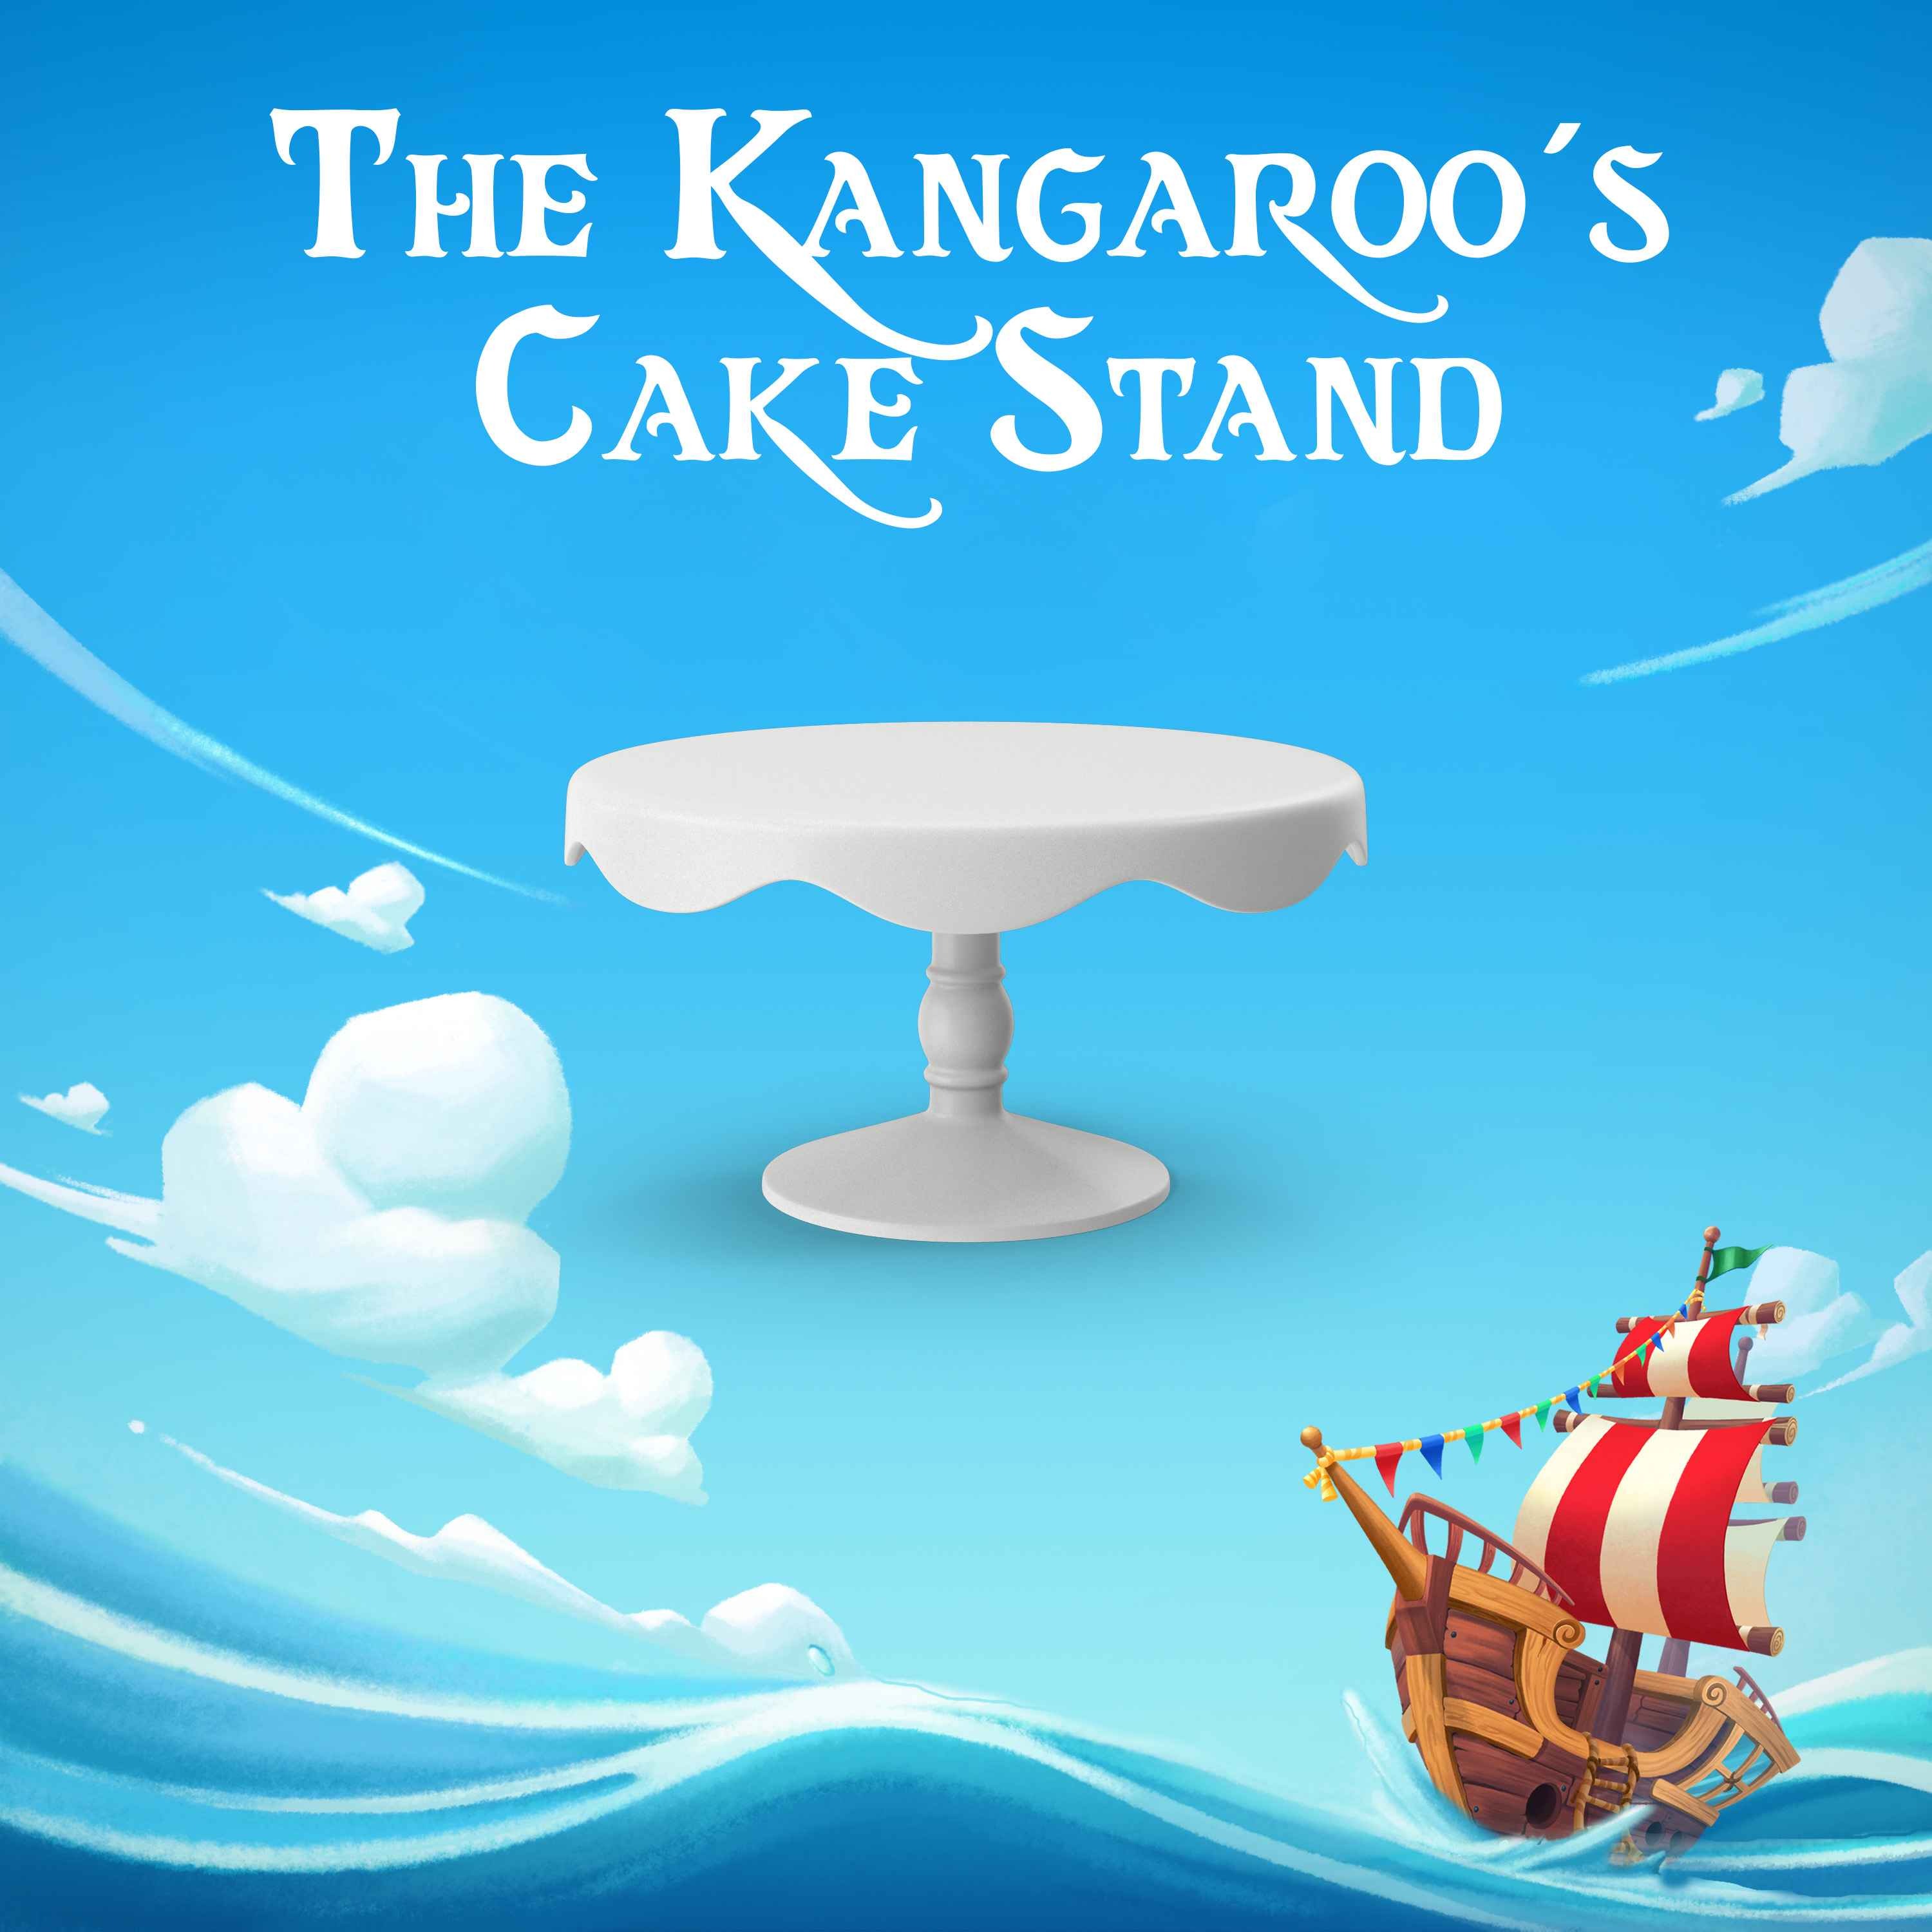 The Kangaroo’s Cake Stand